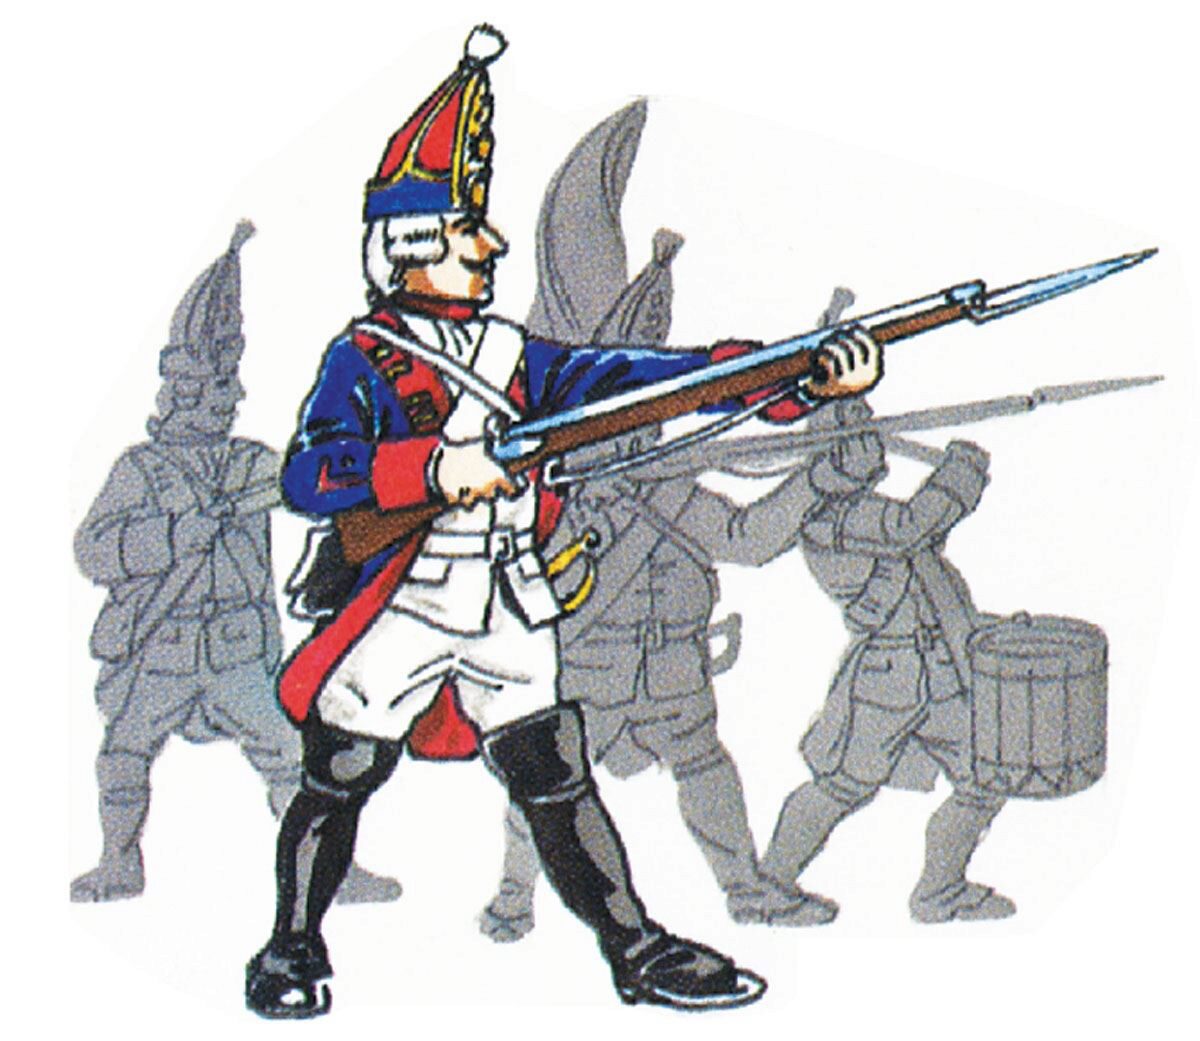 Prince August 68 Zinngiessform Grenadier, stehend Battle of Rossbach